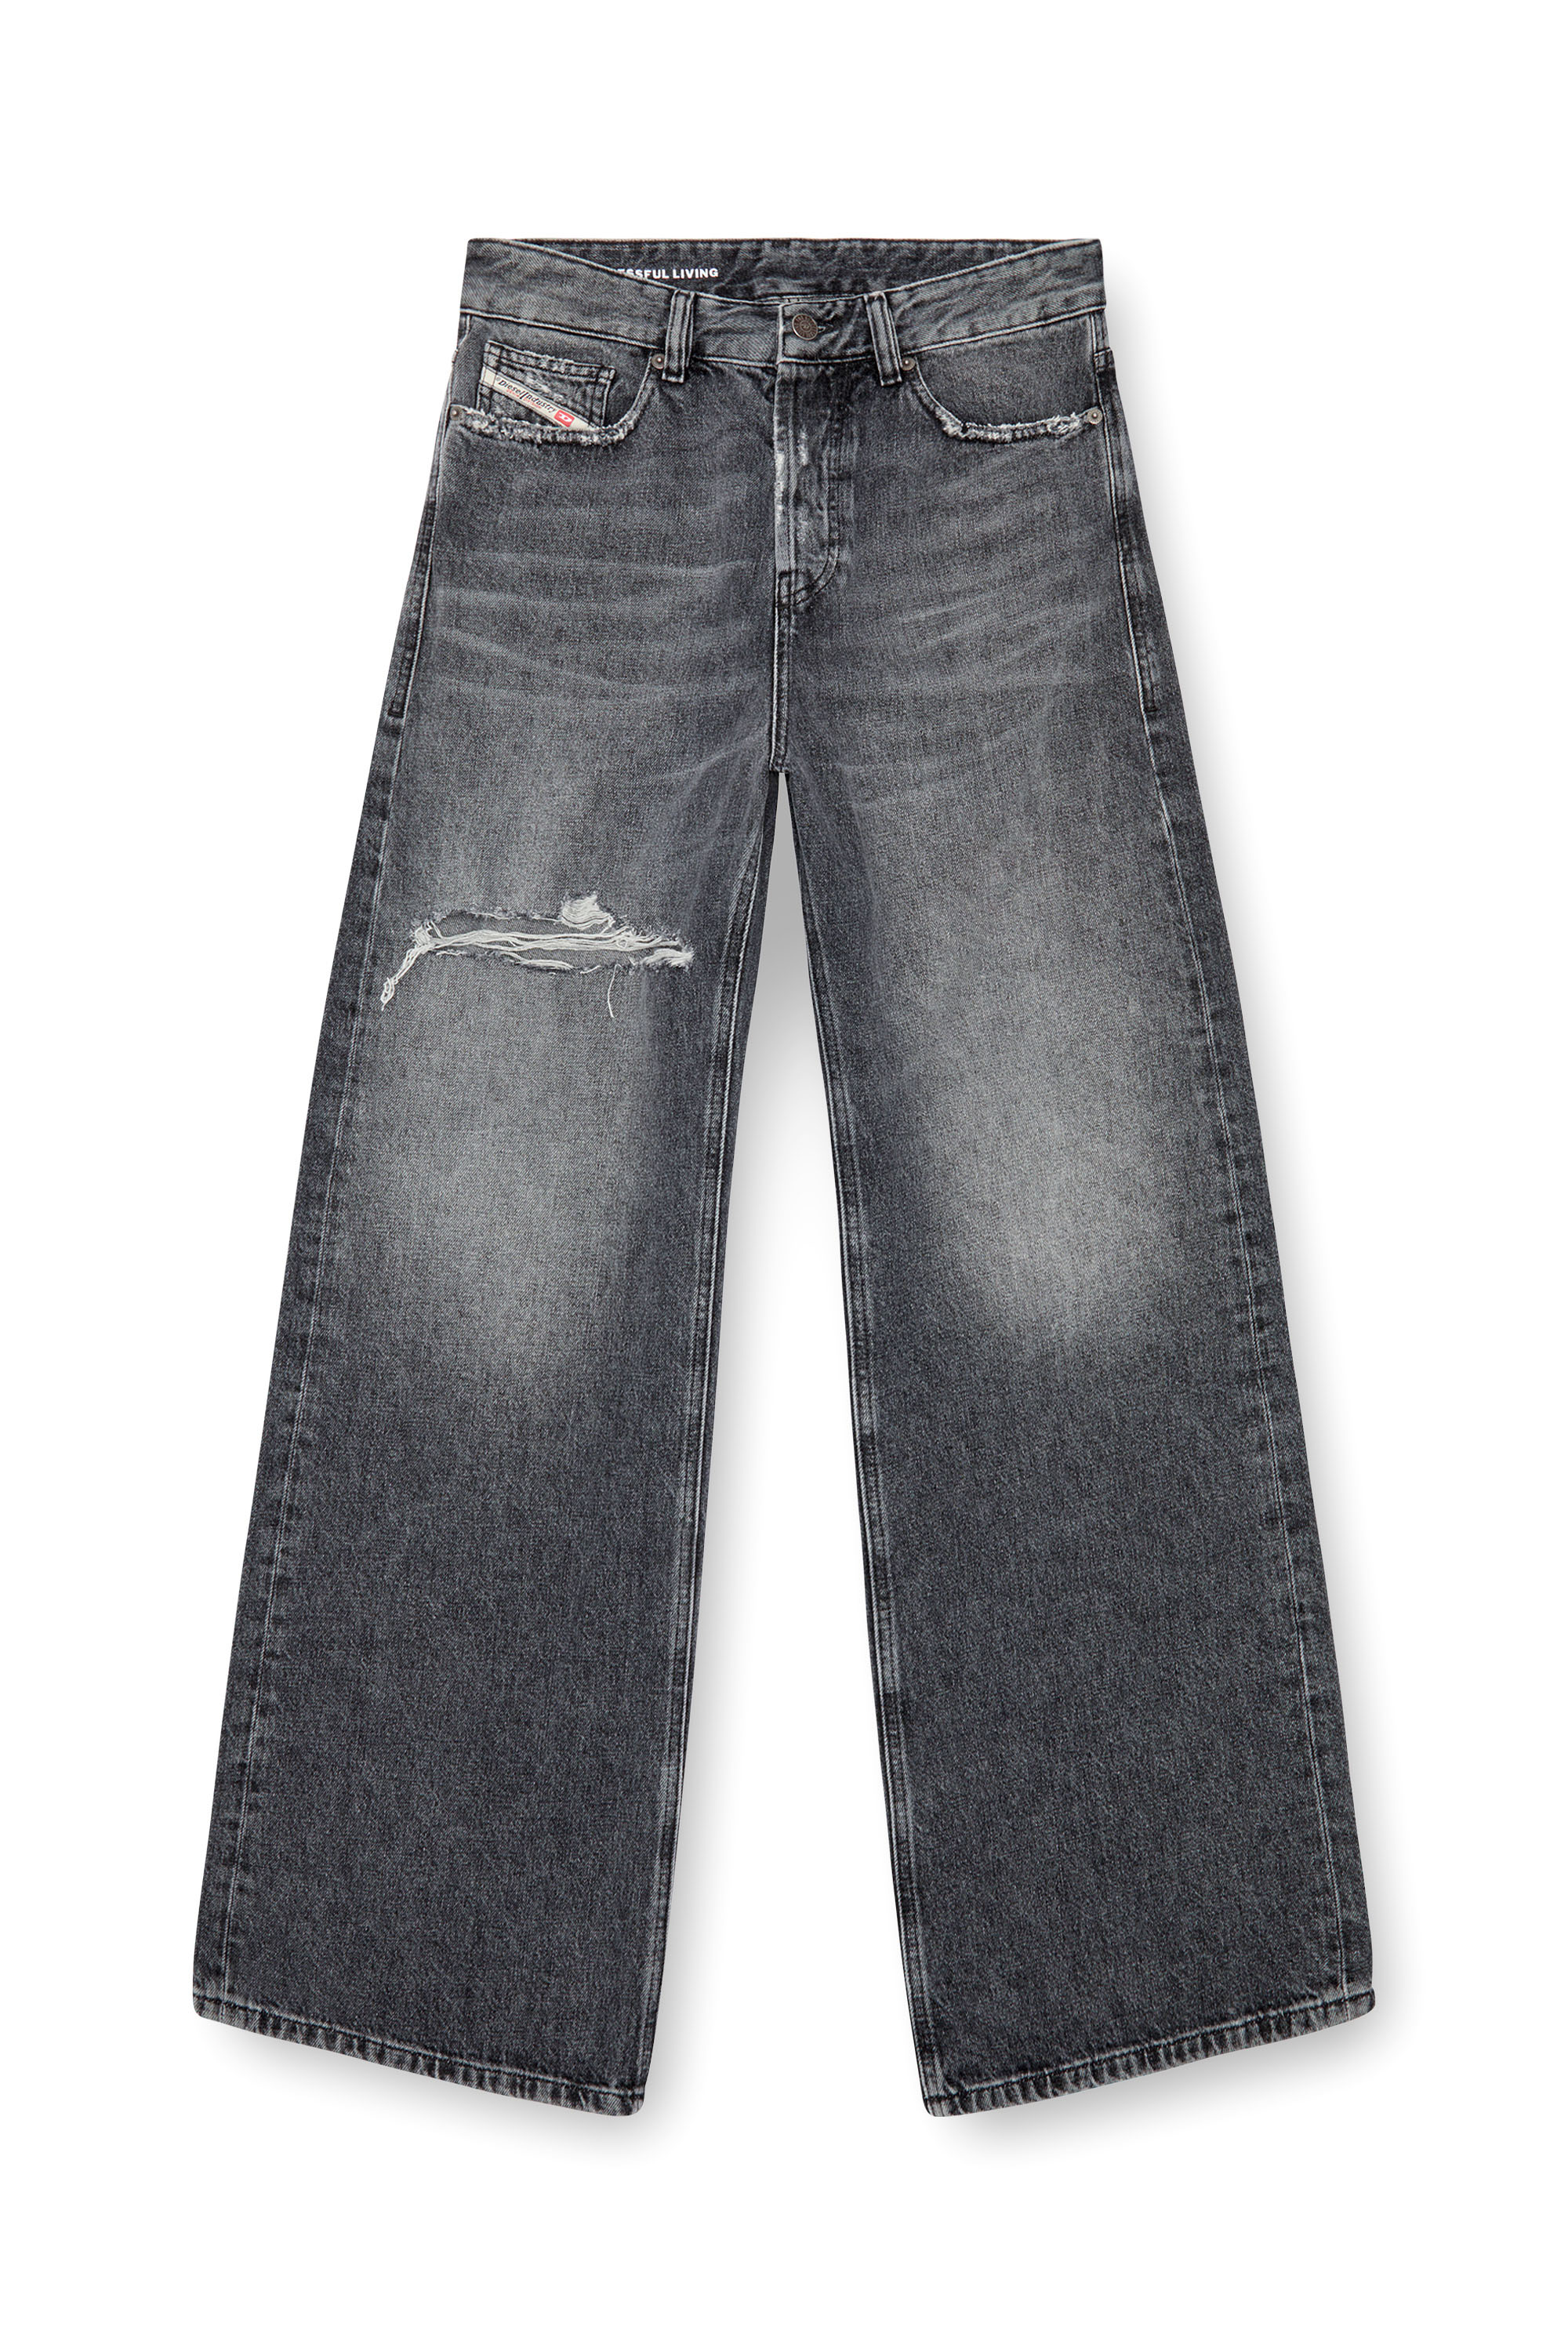 Diesel - Femme Straight Jeans 1996 D-Sire 007X4, Noir/Gris foncé - Image 3